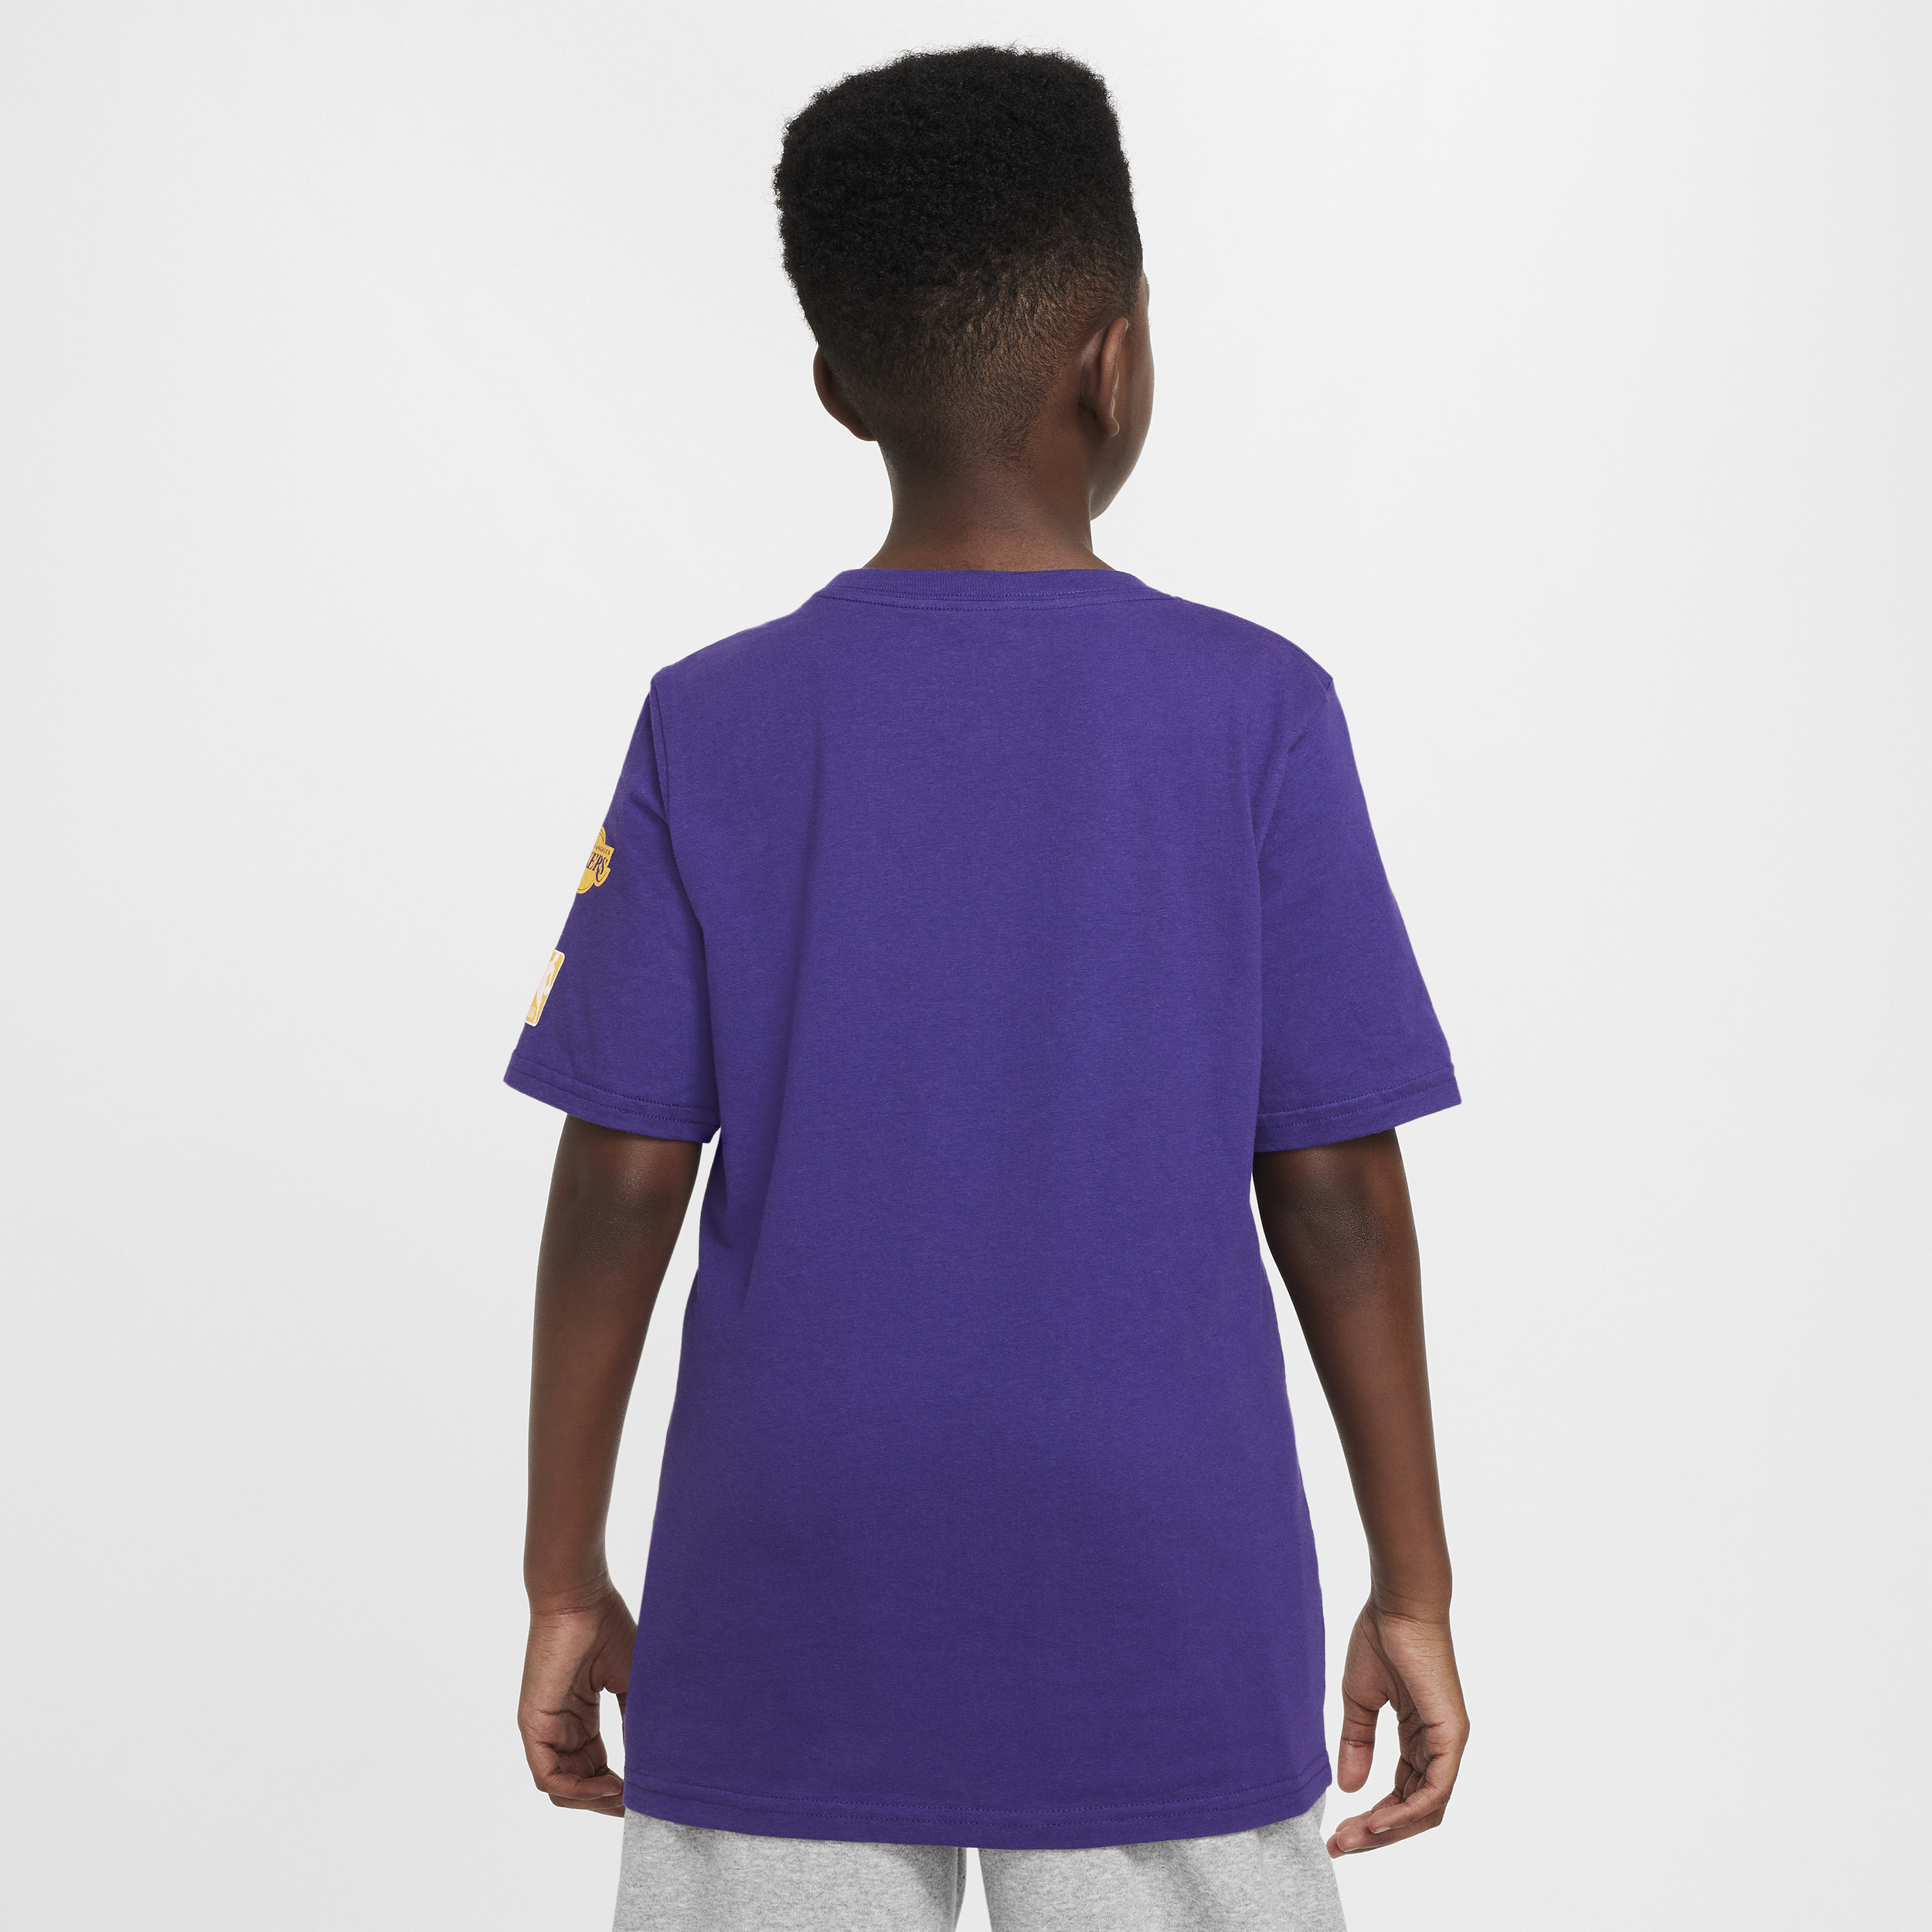 Nike Los Angeles Lakers Essential NBA-shirt voor jongens Paars